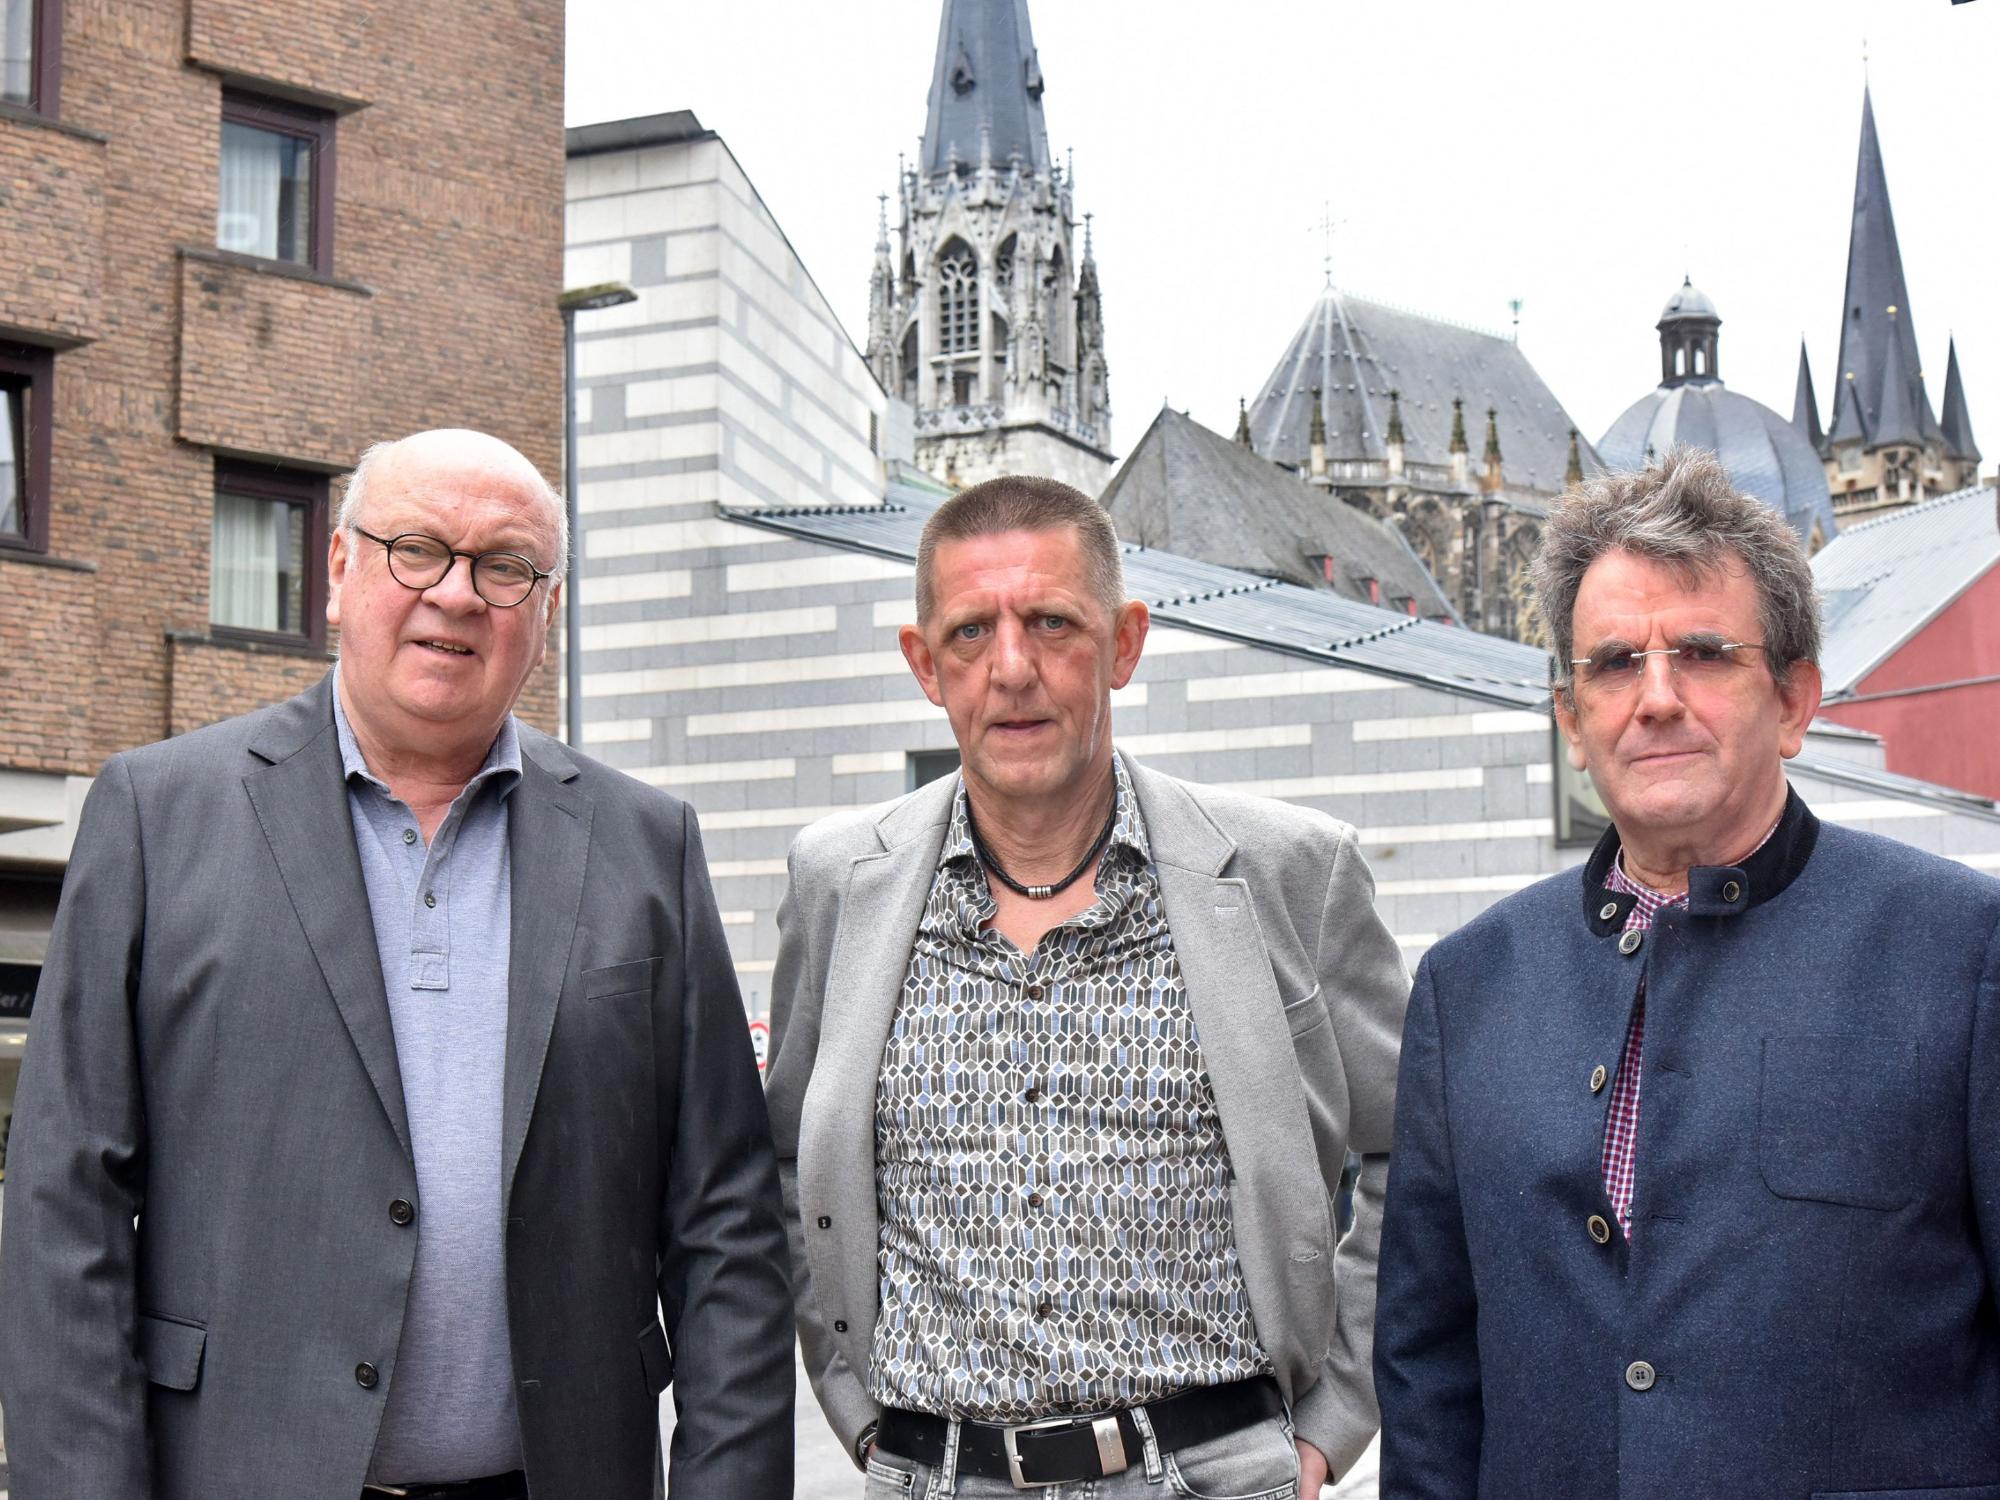 Manfred Schmitz, Thomas F und Paul Leidner (von links) sind Teil des Betroffenenrates im Bistum Aachen. (c) Andreas Herrmann